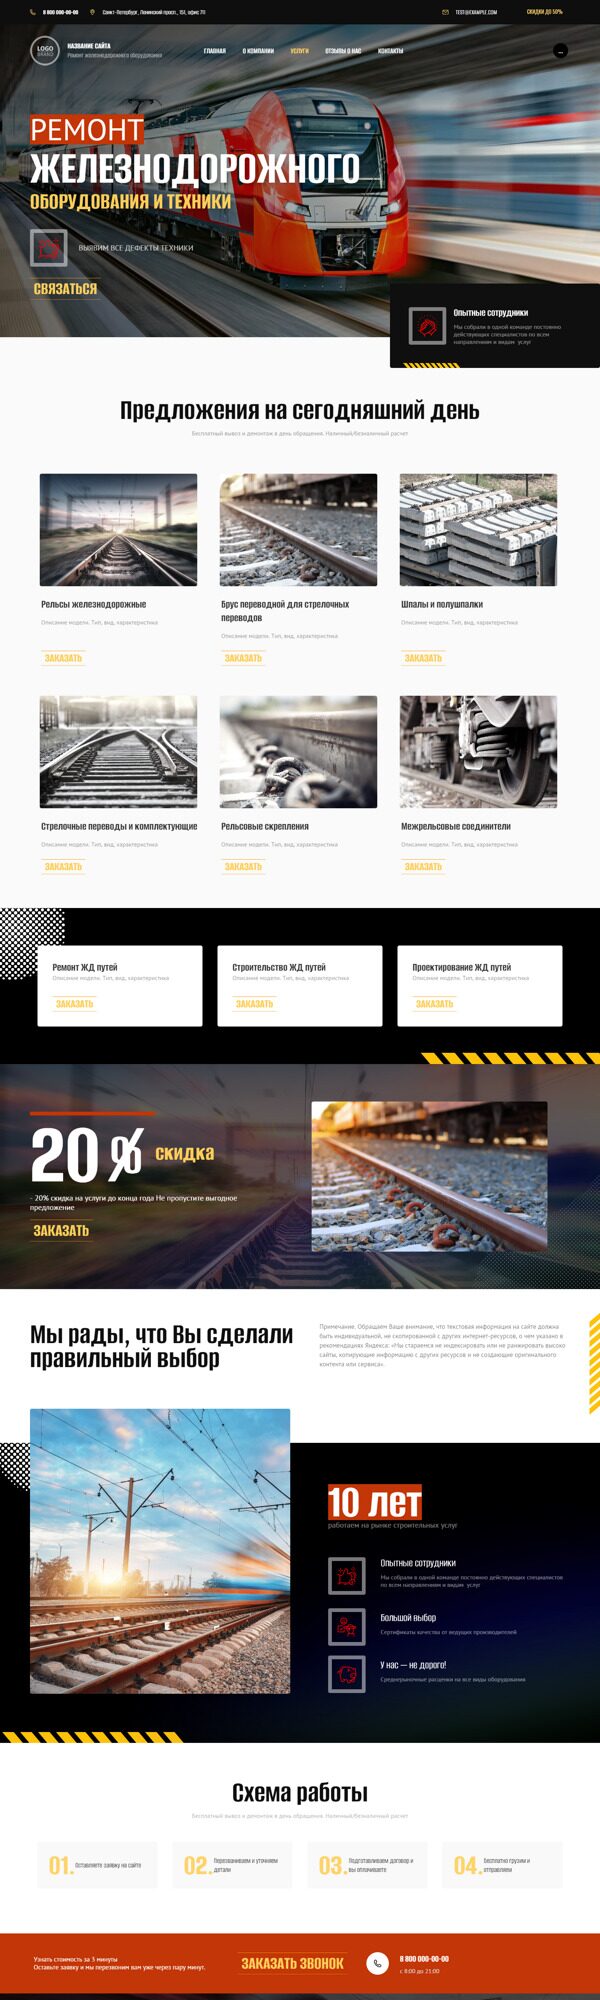 Готовый Сайт-Бизнес № 4504935 - Строительство и ремонт железных дорог (Десктопная версия)